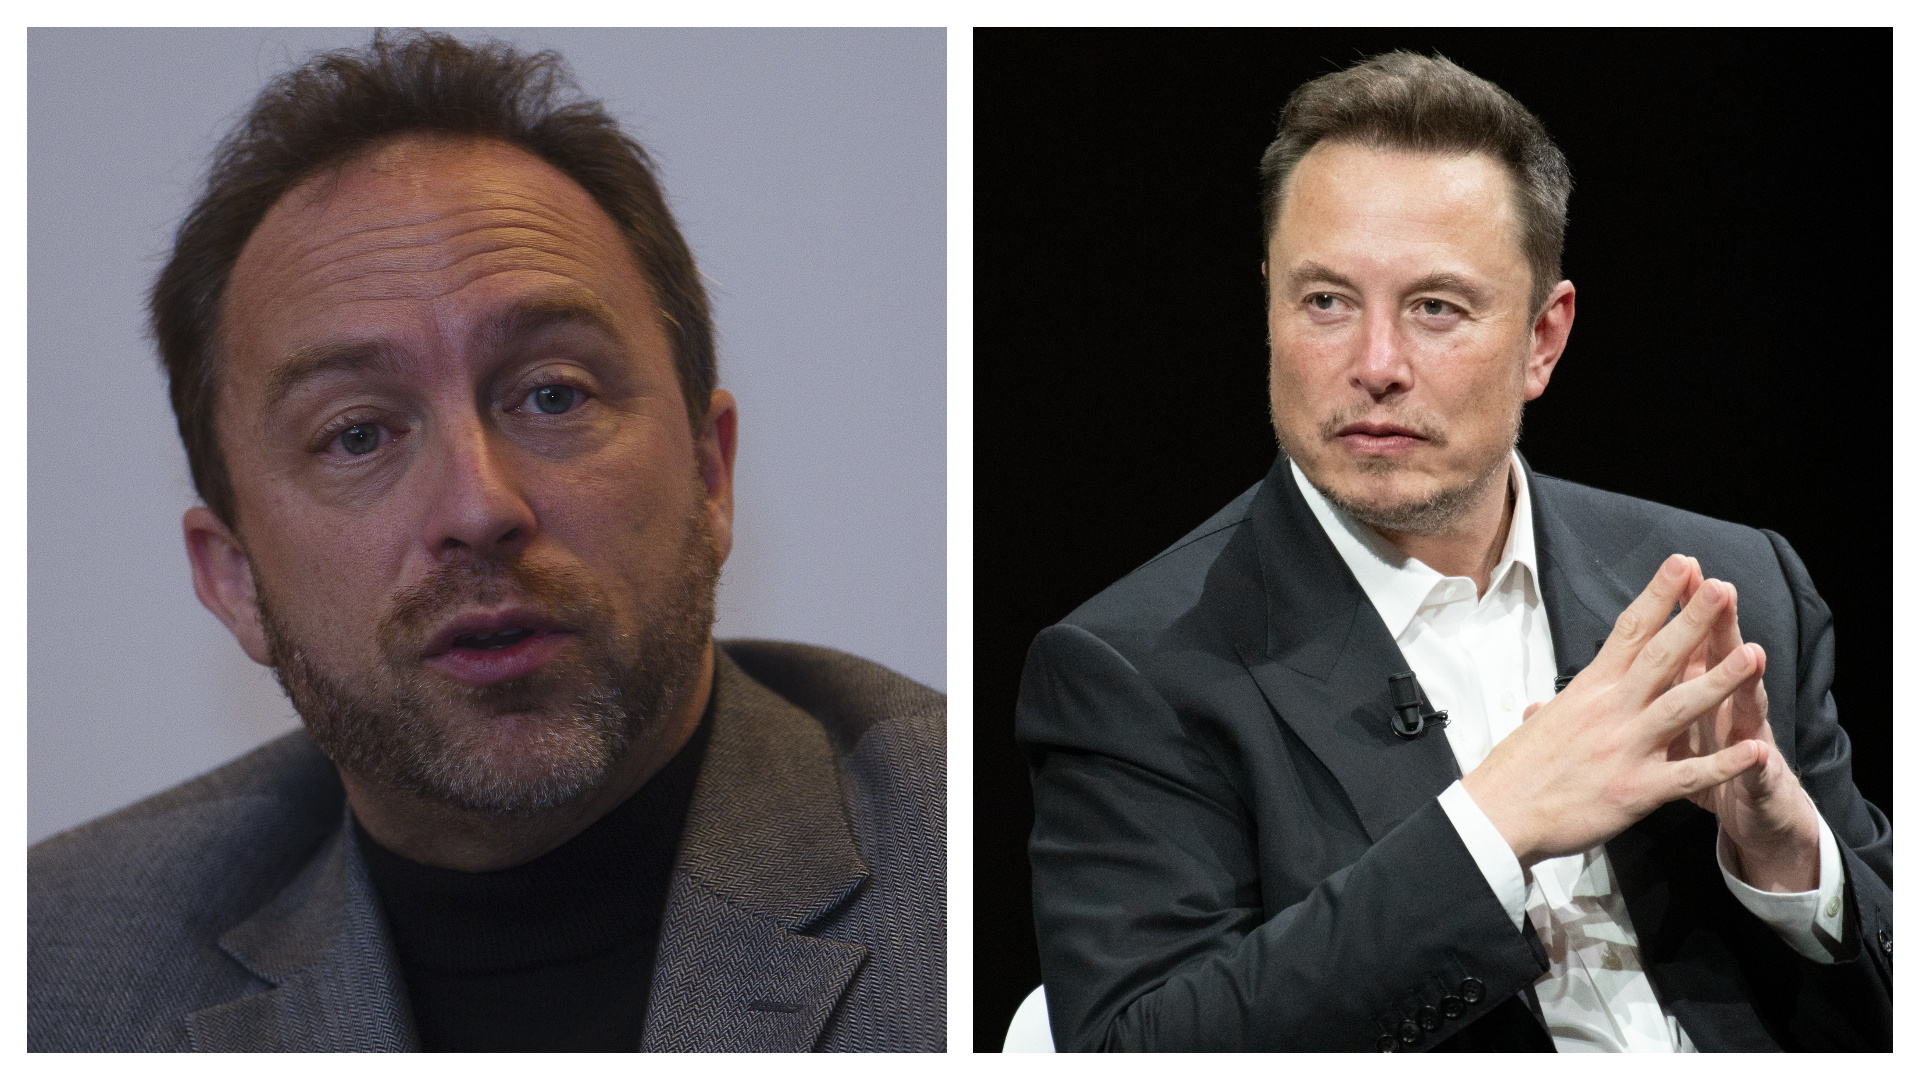 Montagem posiciona, lado a lado, Jimmy Wales (Fundador da Wikipédia) e Elon Musk